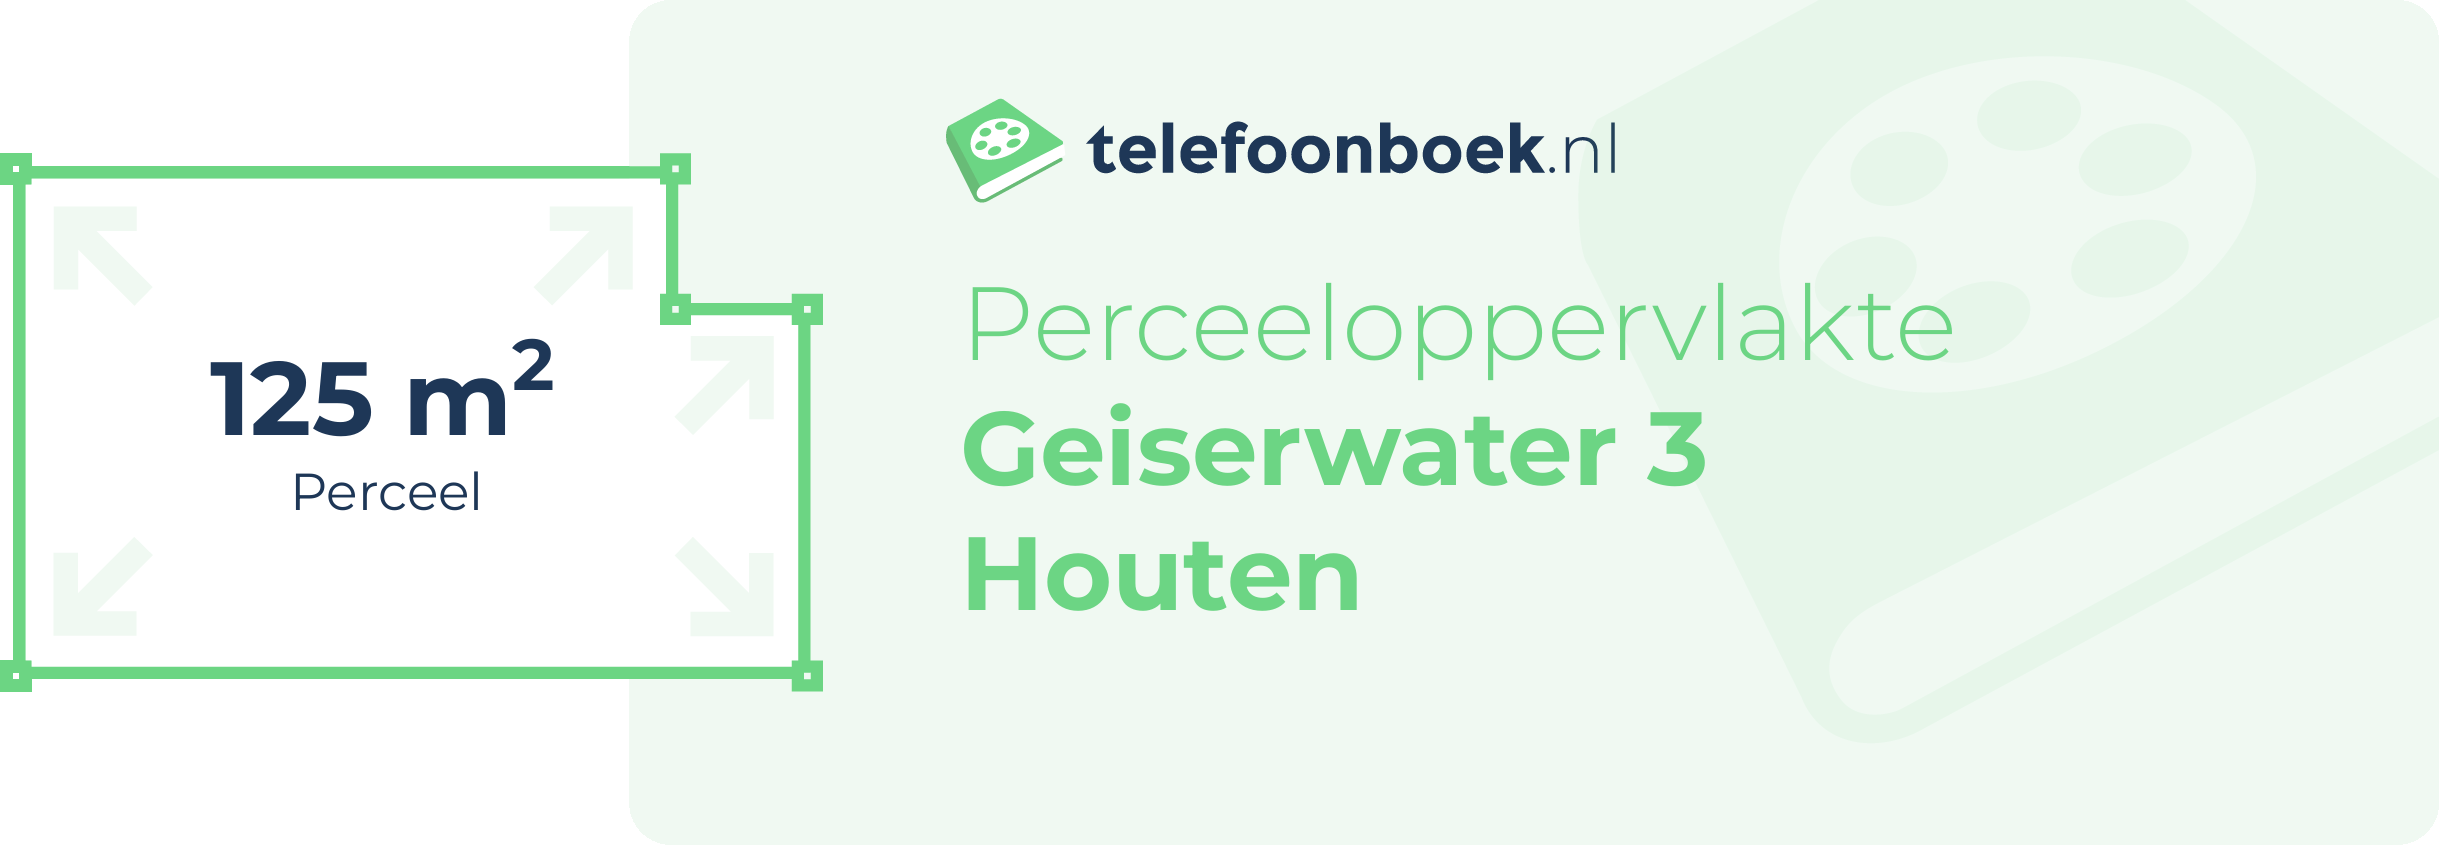 Perceeloppervlakte Geiserwater 3 Houten